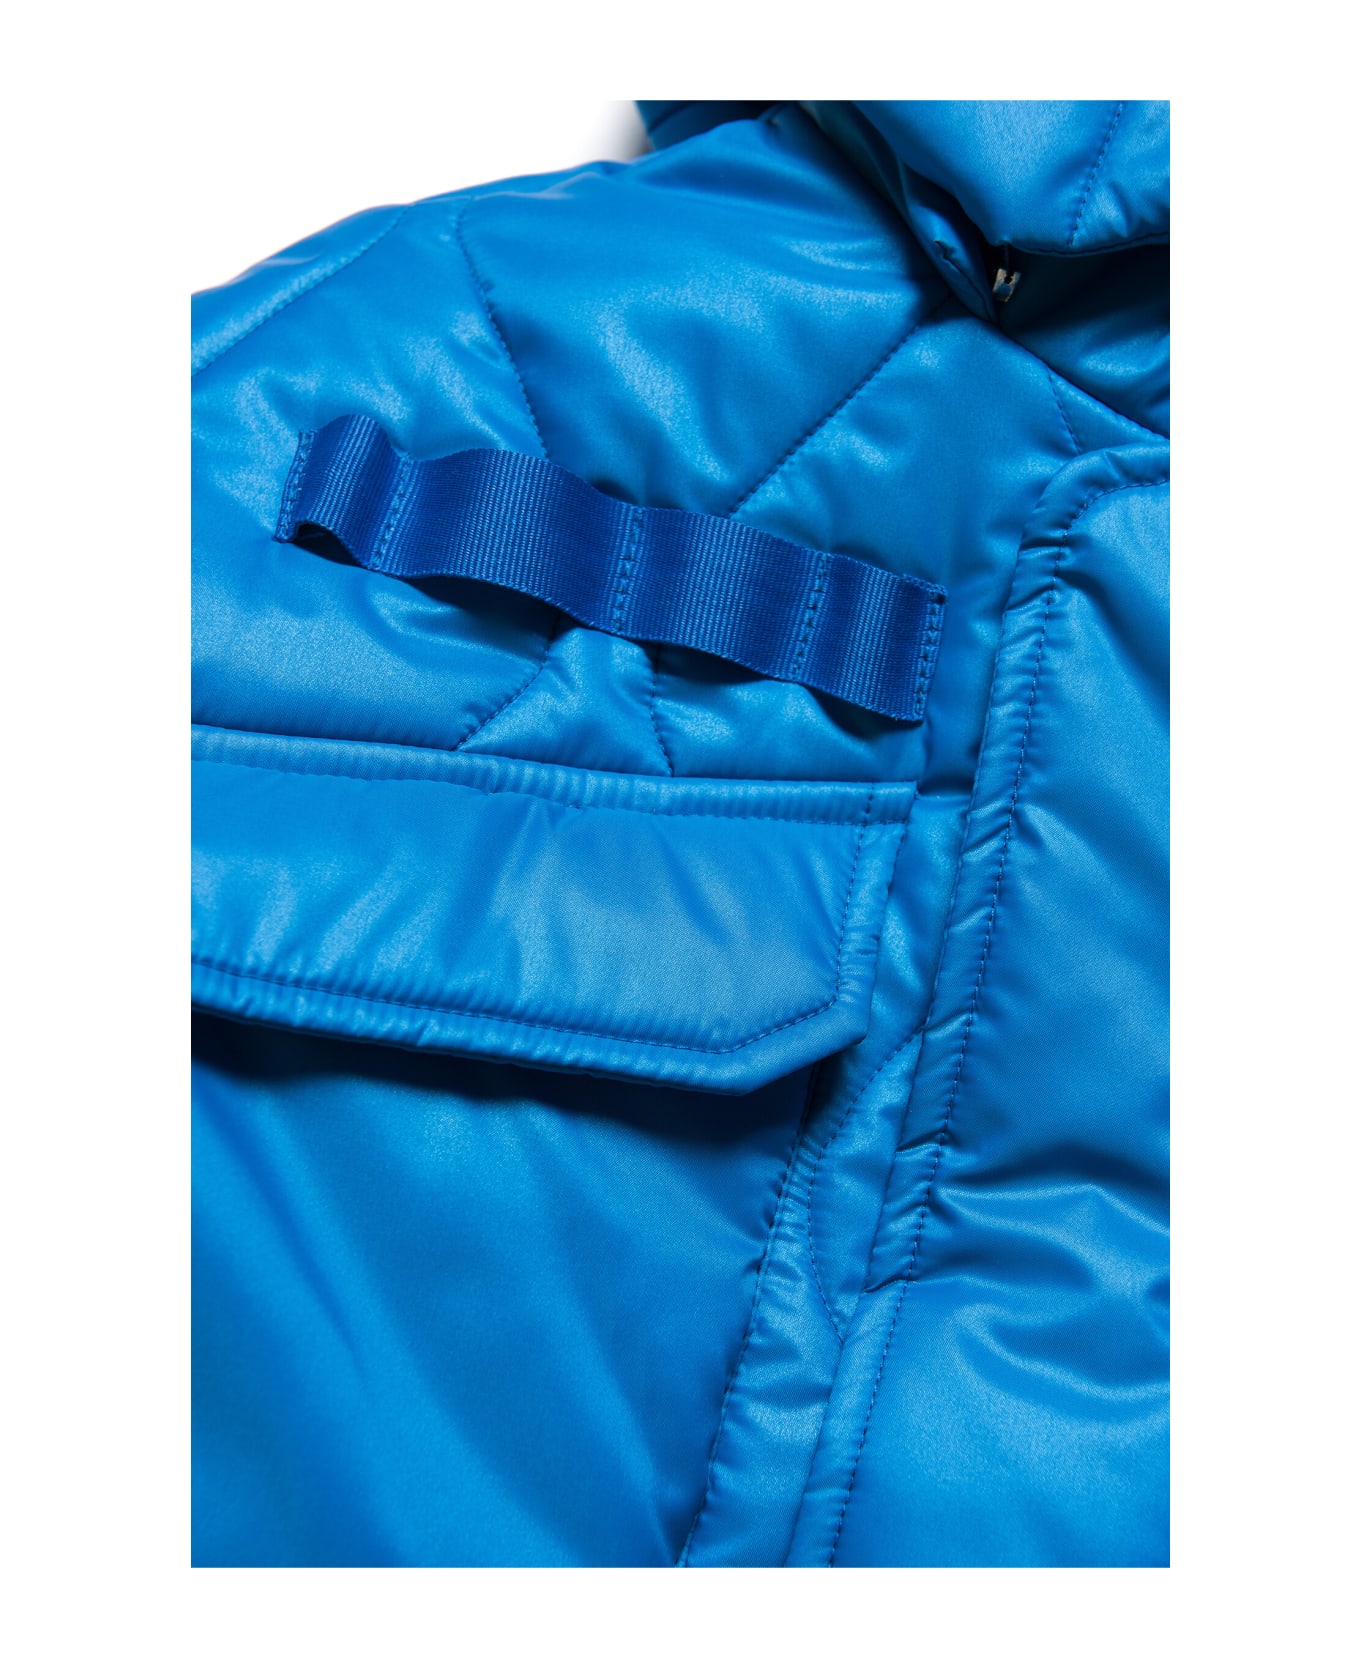 MYAR Myj9u Jacket Myar - Bright bluette